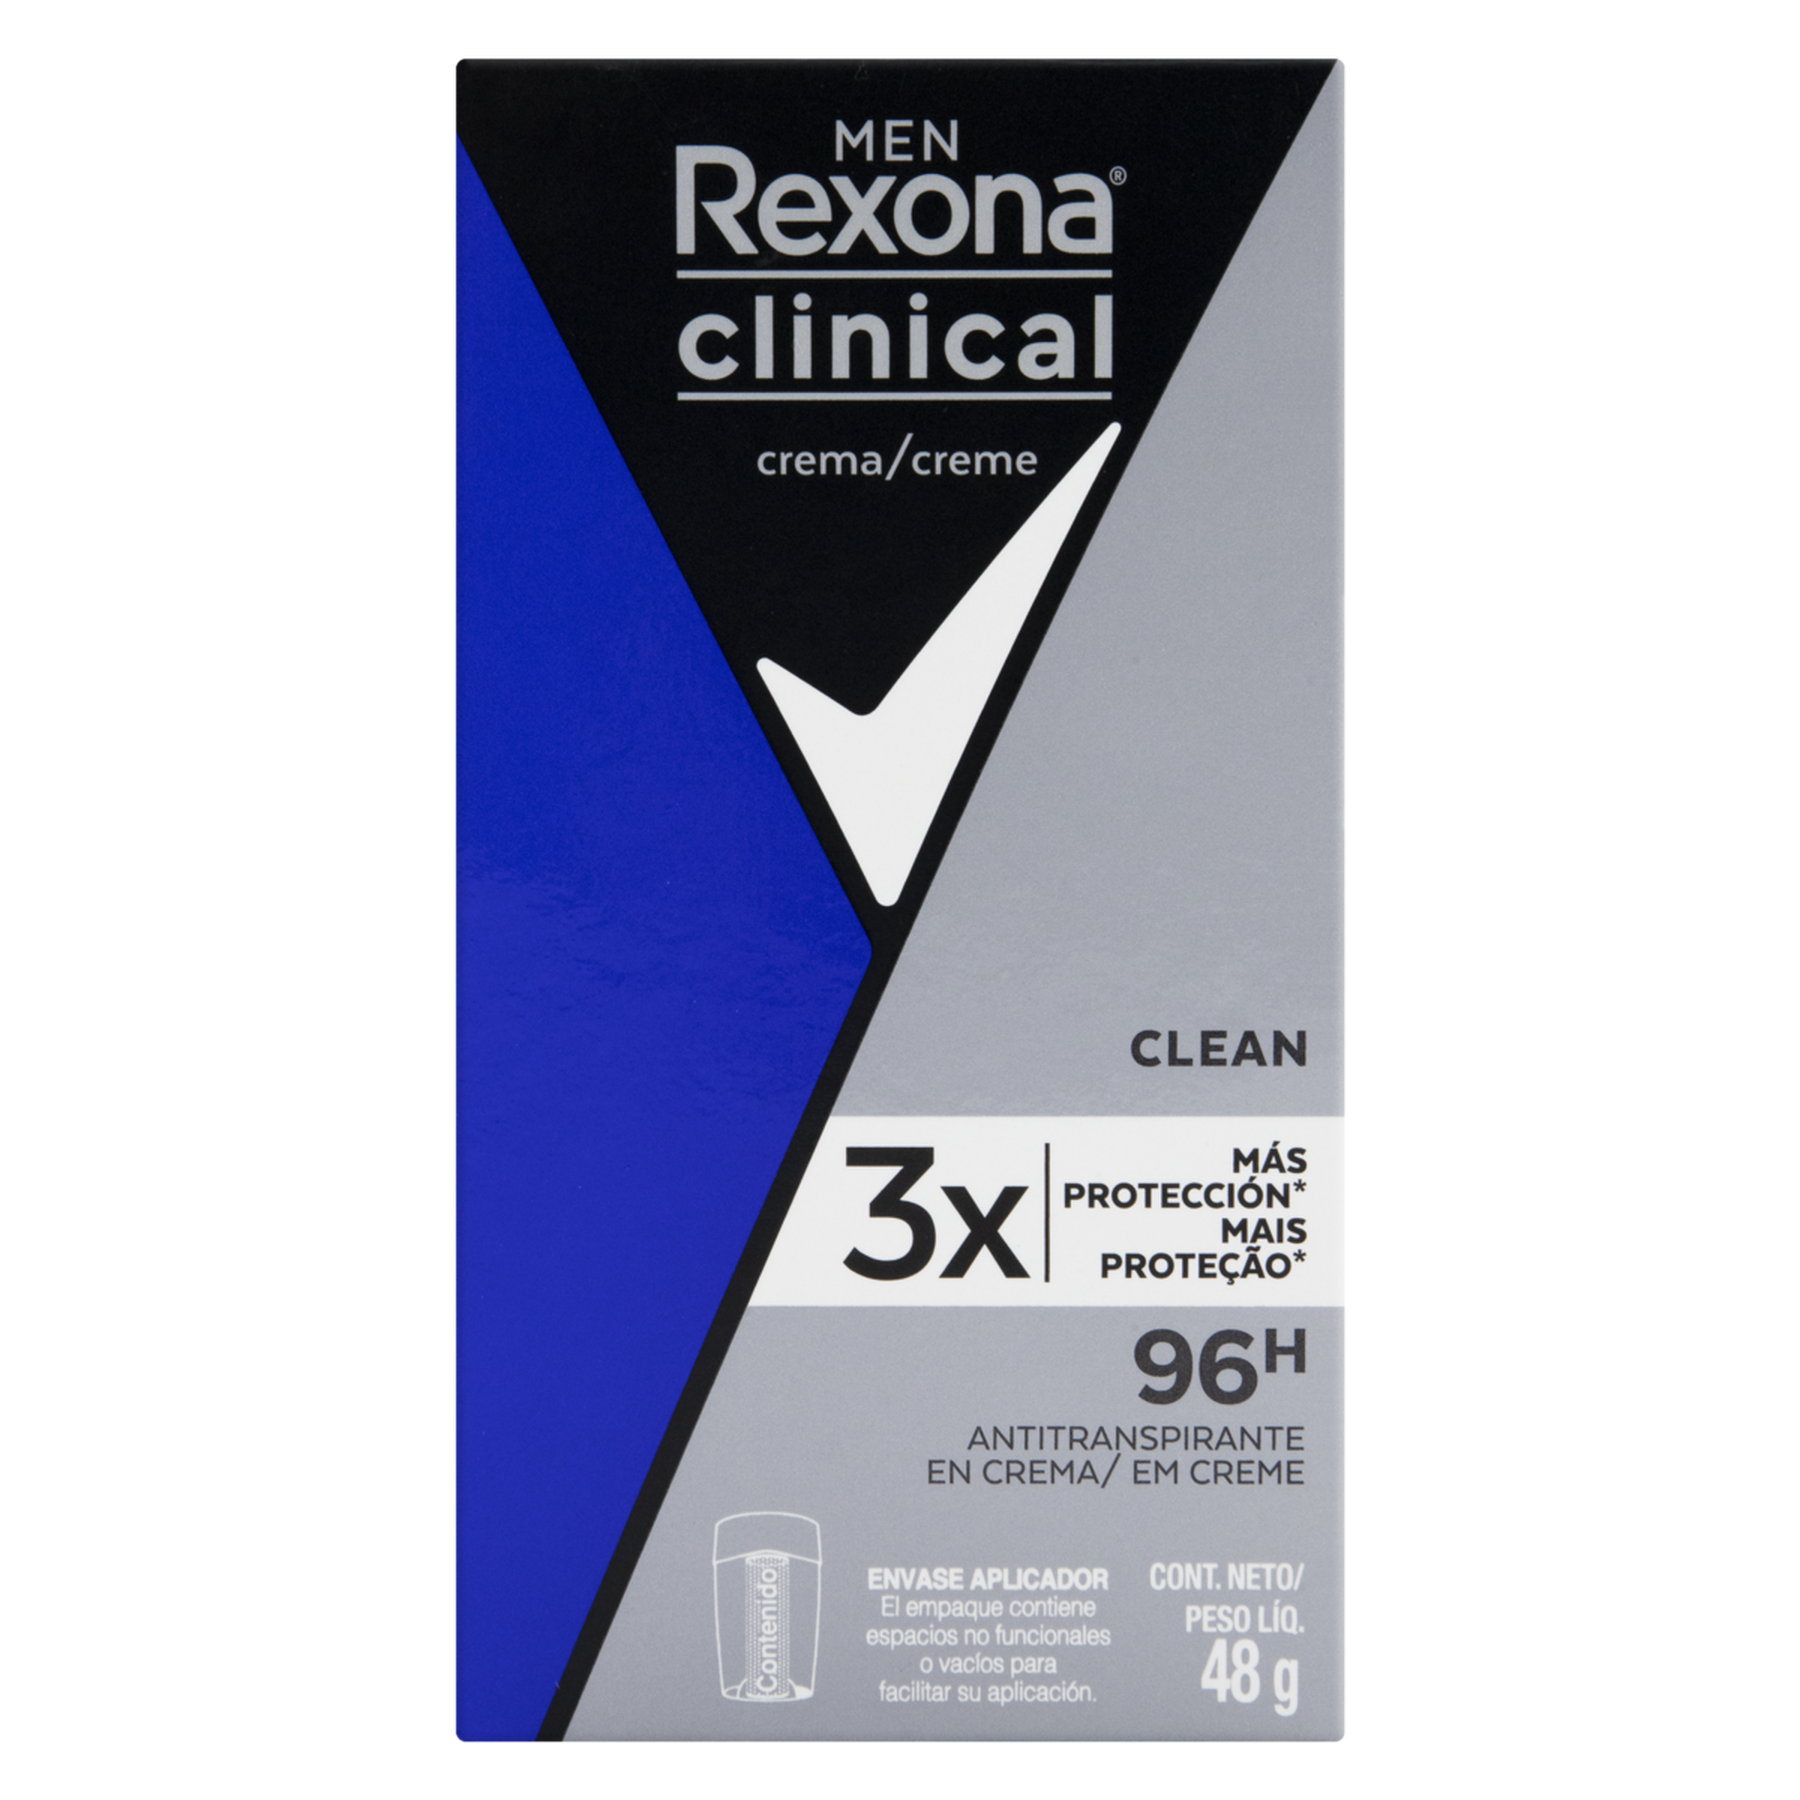 Antitranspirante Creme Clean Rexona Clinical Men 48g